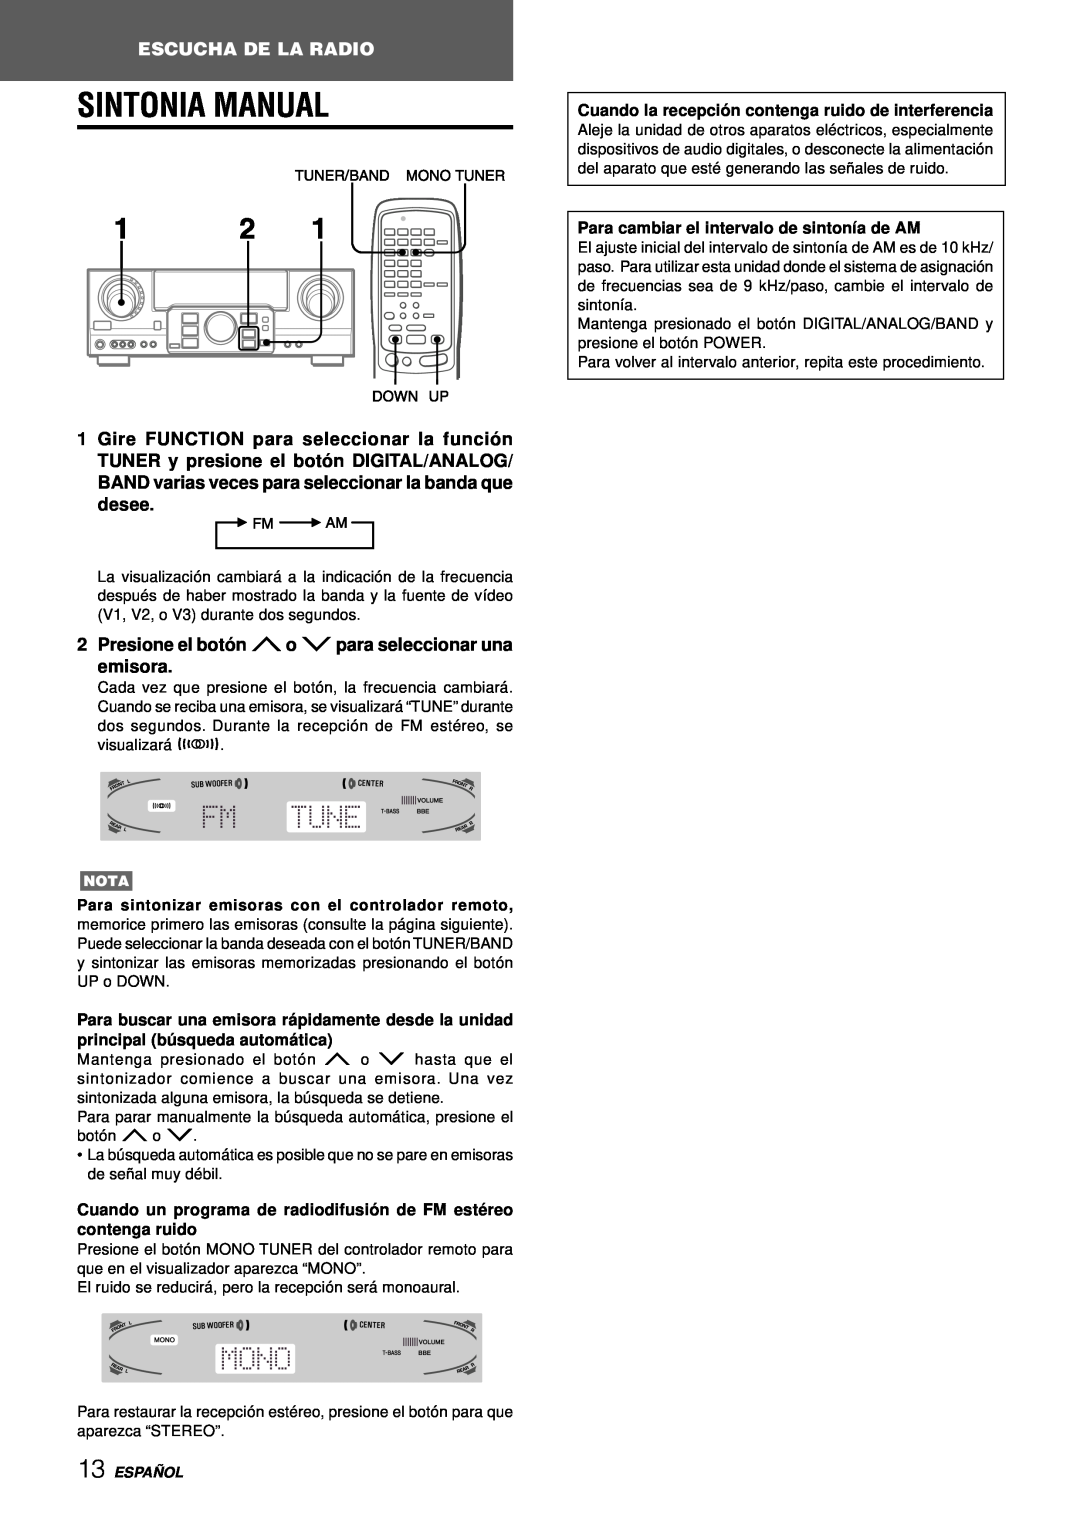 Aiwa AV-D97 manual Sintonia Manual, Escucha De La Radio, Presione el botó n No Mpara seleccionar una emisora, Españ Ol 